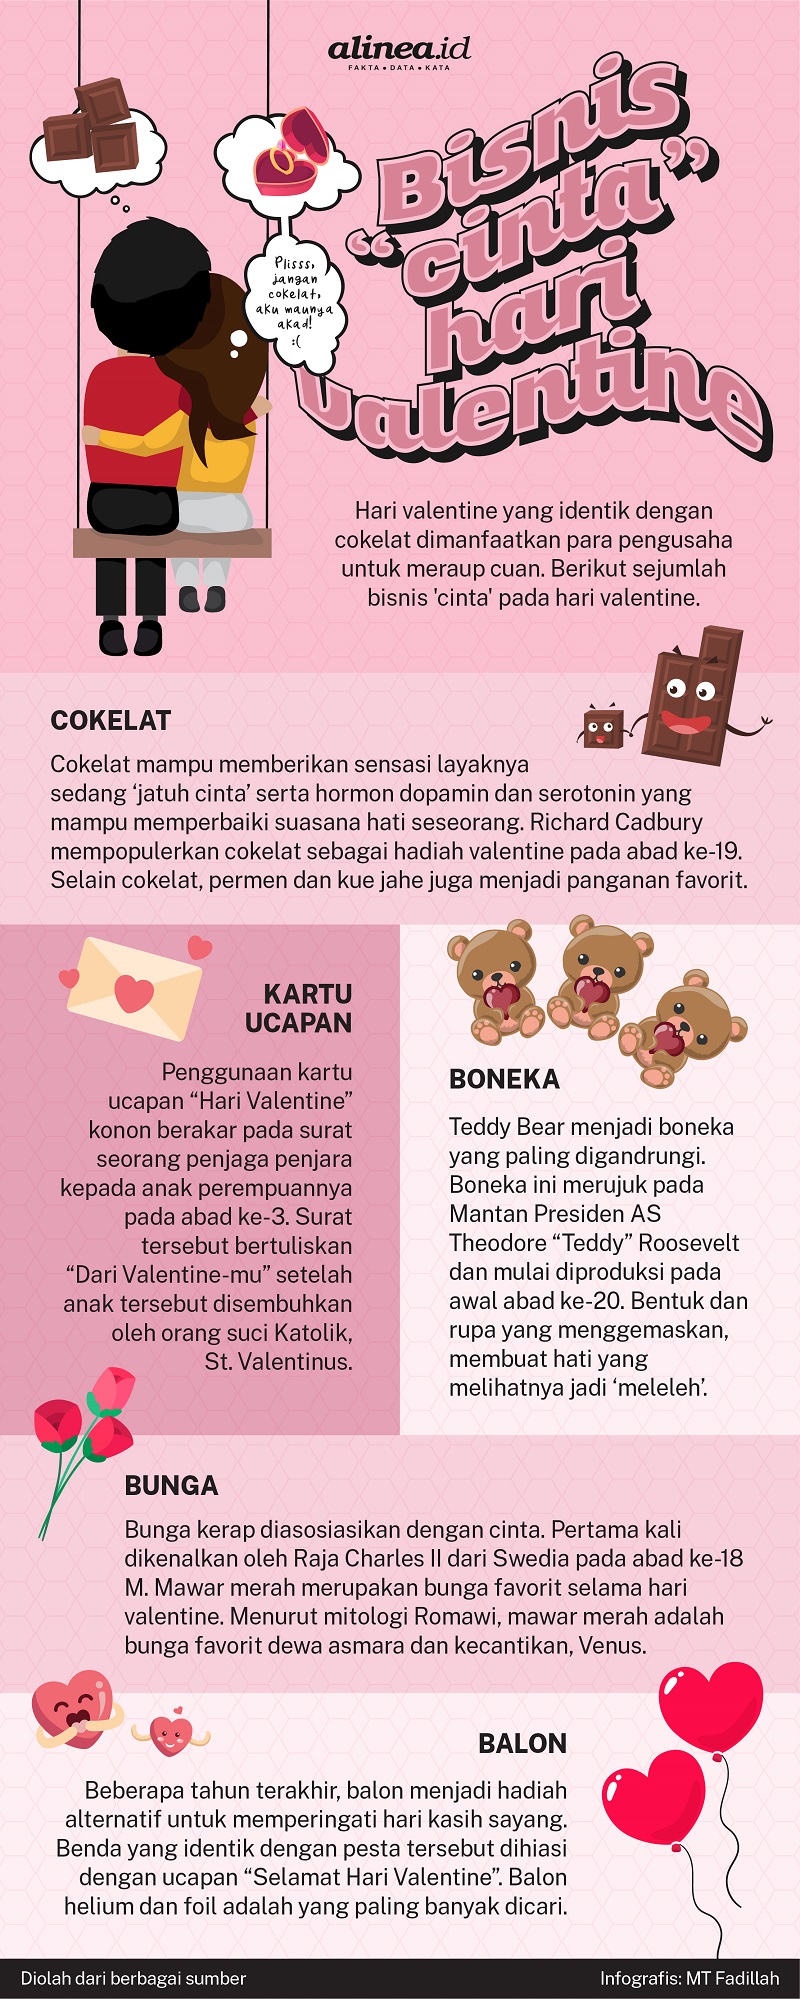 Infografik peluang bisnis saat hari Valentine. Alinea.id/MT Fadillah